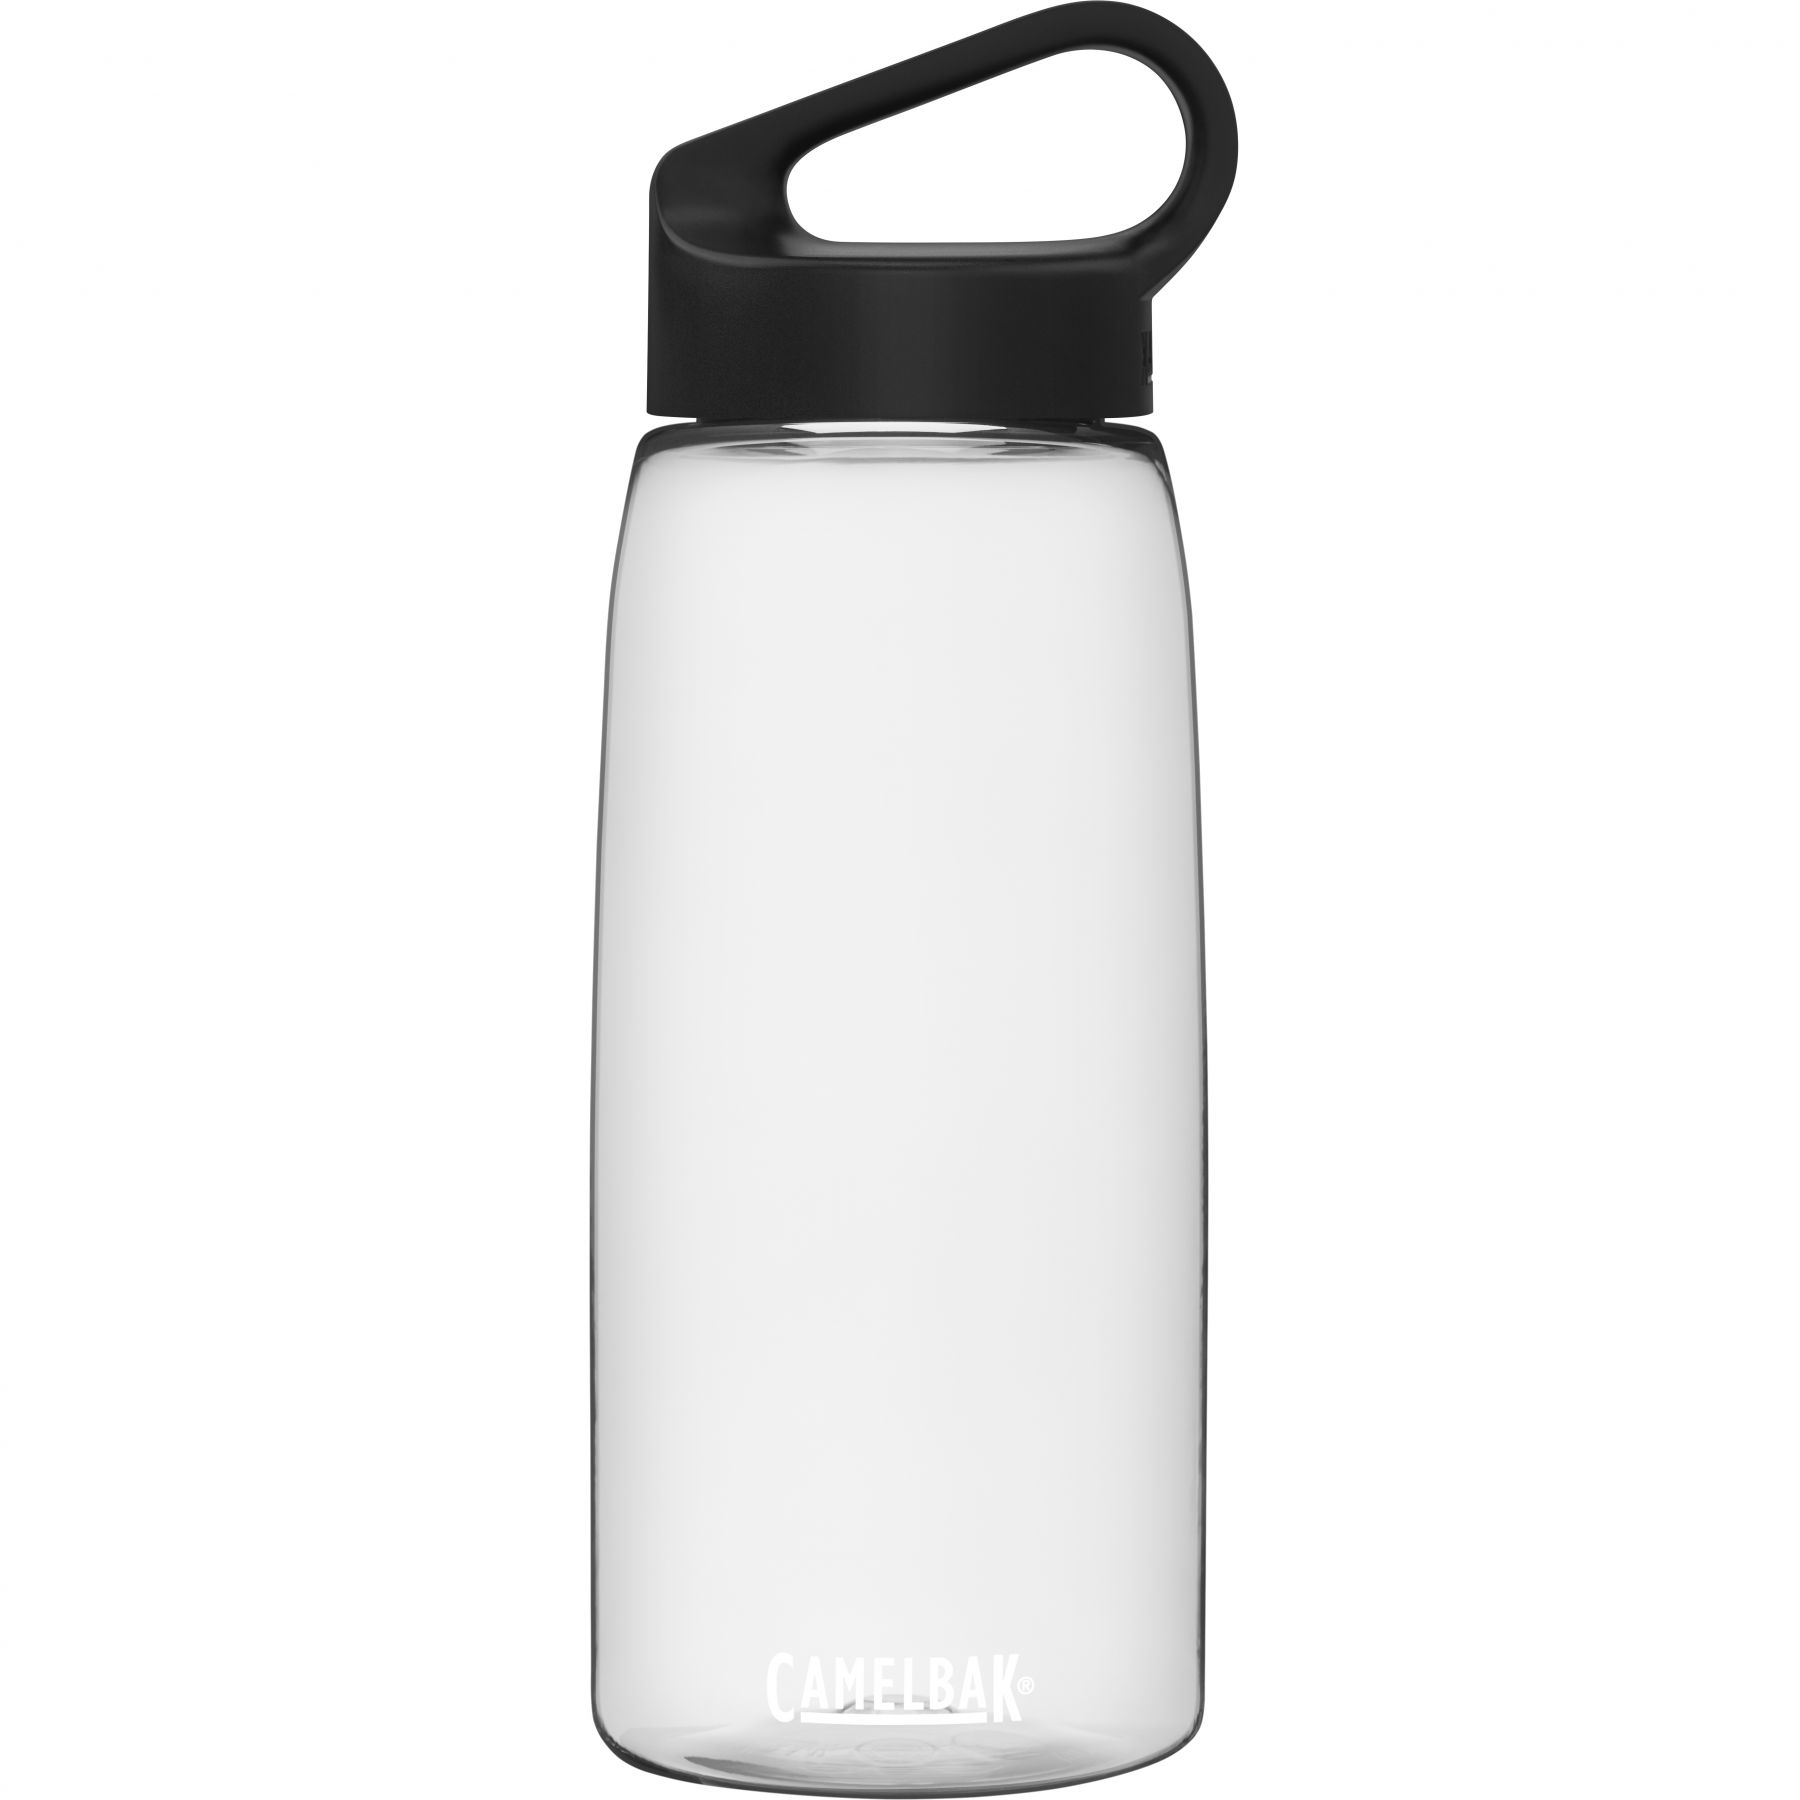 Brug CamelBak Carry Cap, drikkedunk, 1L, transparent til en forbedret oplevelse